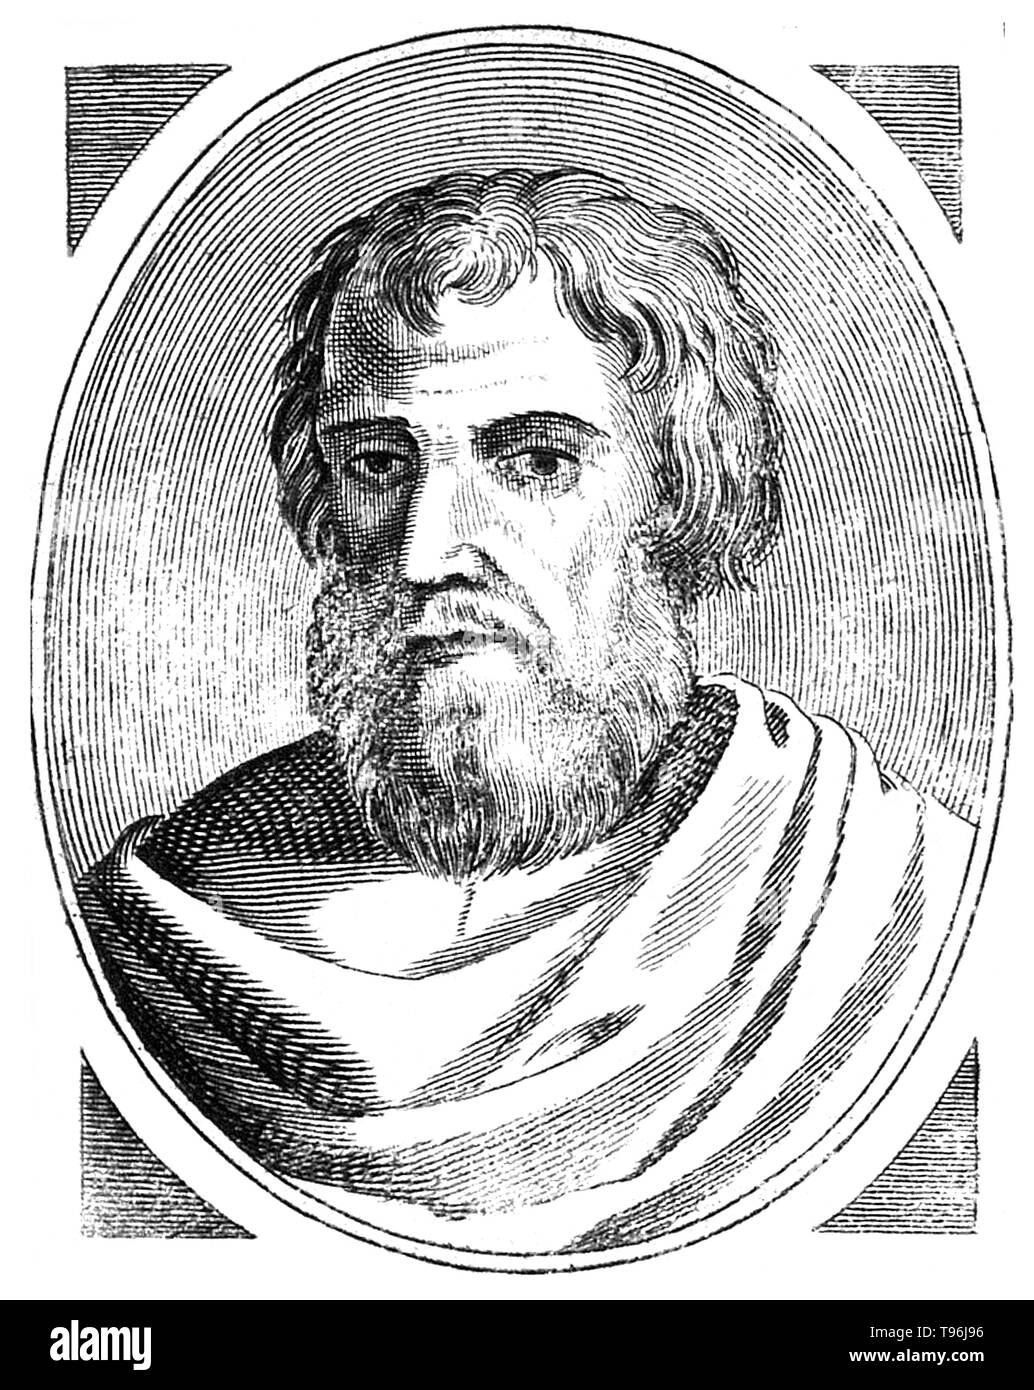 Arnaldus de Villa Nova (1235-1311) était un alchimiste, astrologue et médecin. Il a étudié la chimie, la médecine, la physique et la philosophie arabe. Il est crédité pour la traduction d'un certain nombre de textes médicaux de l'arabe, y compris les œuvres d'Ibn Sina (Avicenne), Qusta ibn Luqa (Costa ben Luca), et Galen. De nombreux écrits alchimiques, y compris les Thesaurus Thesaurorum ou Rosarius Philosophorum, Novum Lumen, et Flos Florum, sont également attribuées à lui, mais ils ne sont pas d'un authenticité douteuse. Banque D'Images